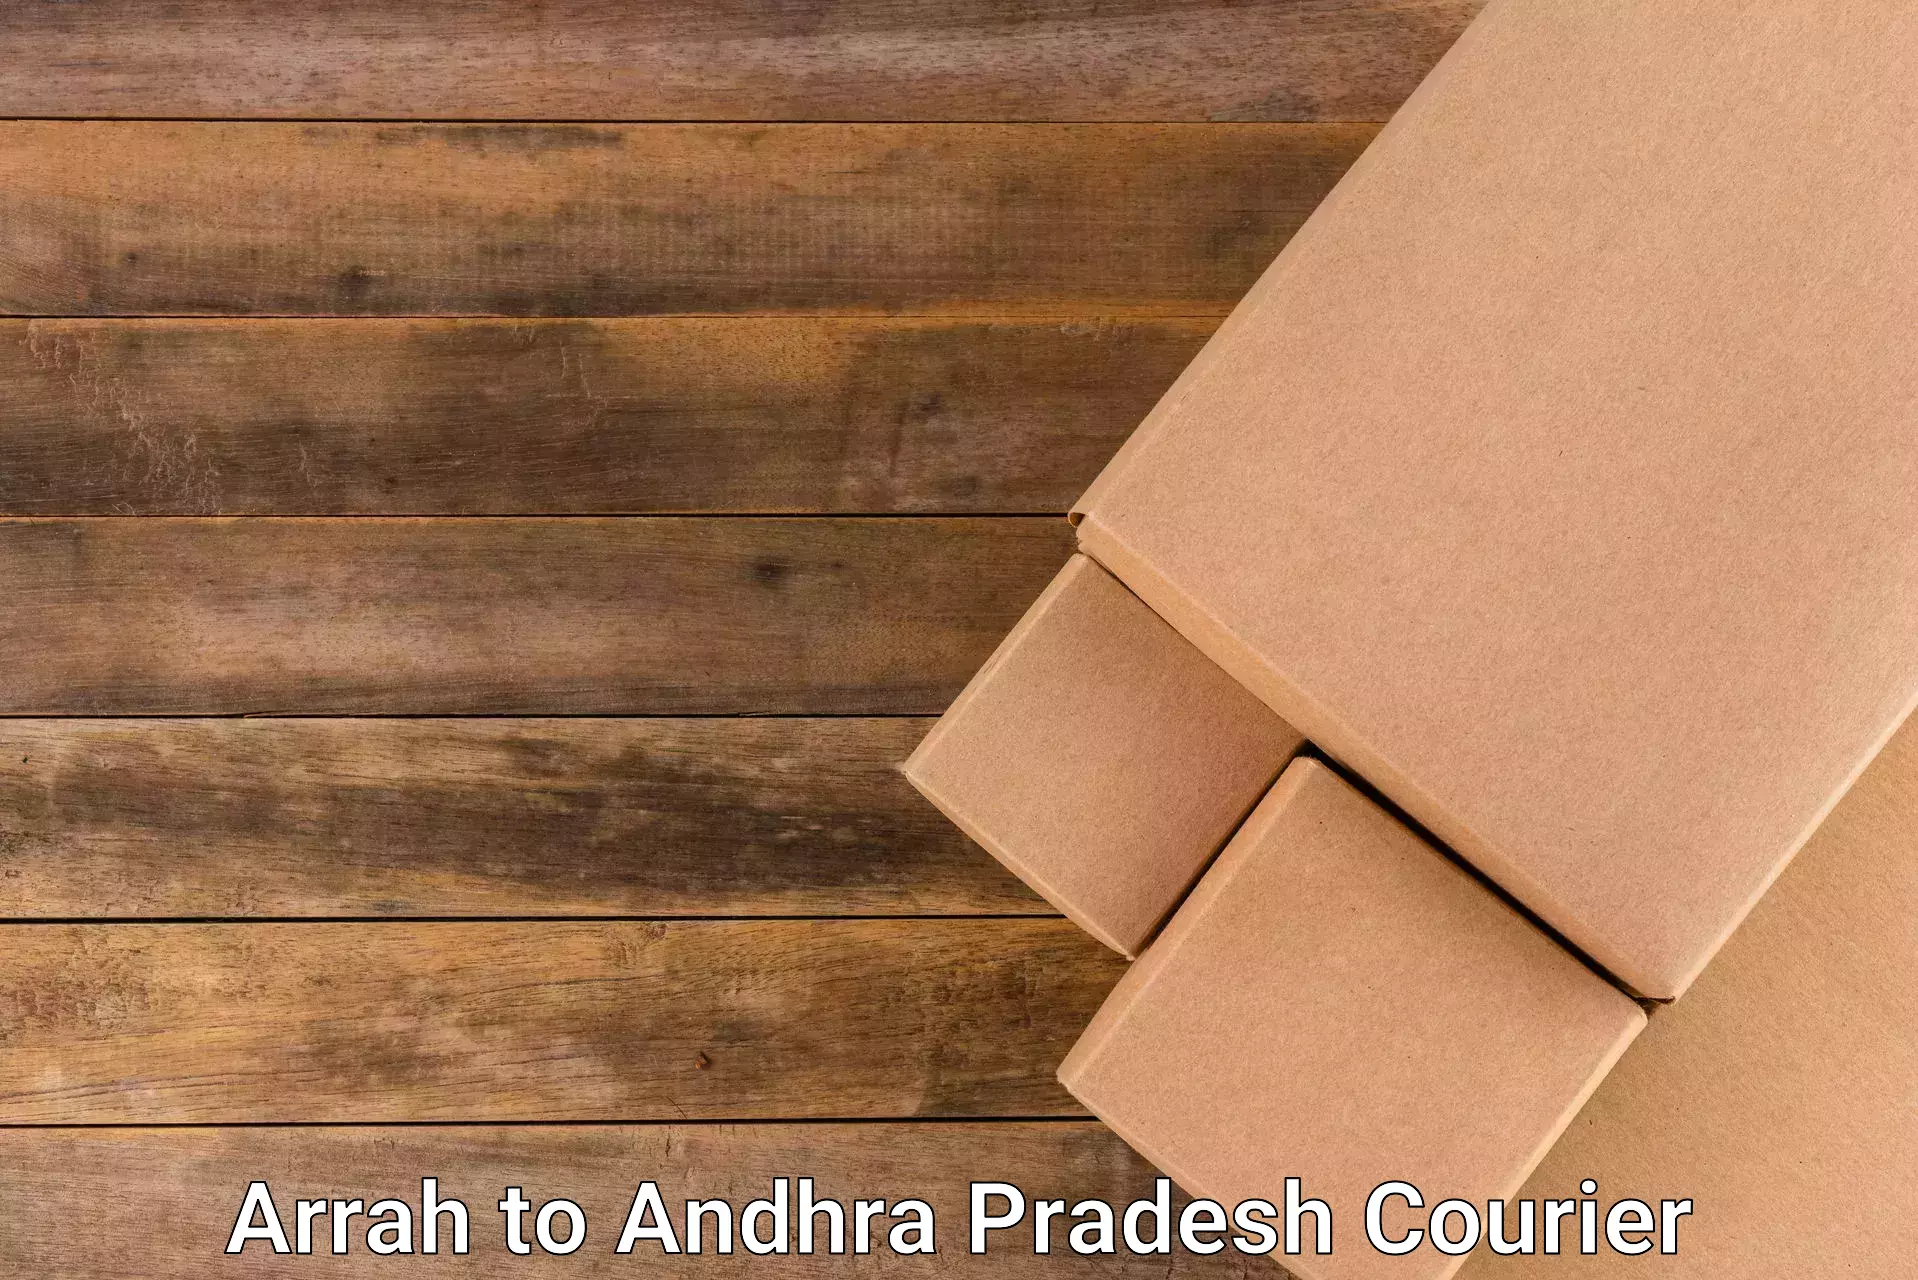 Courier service partnerships Arrah to Andhra Pradesh